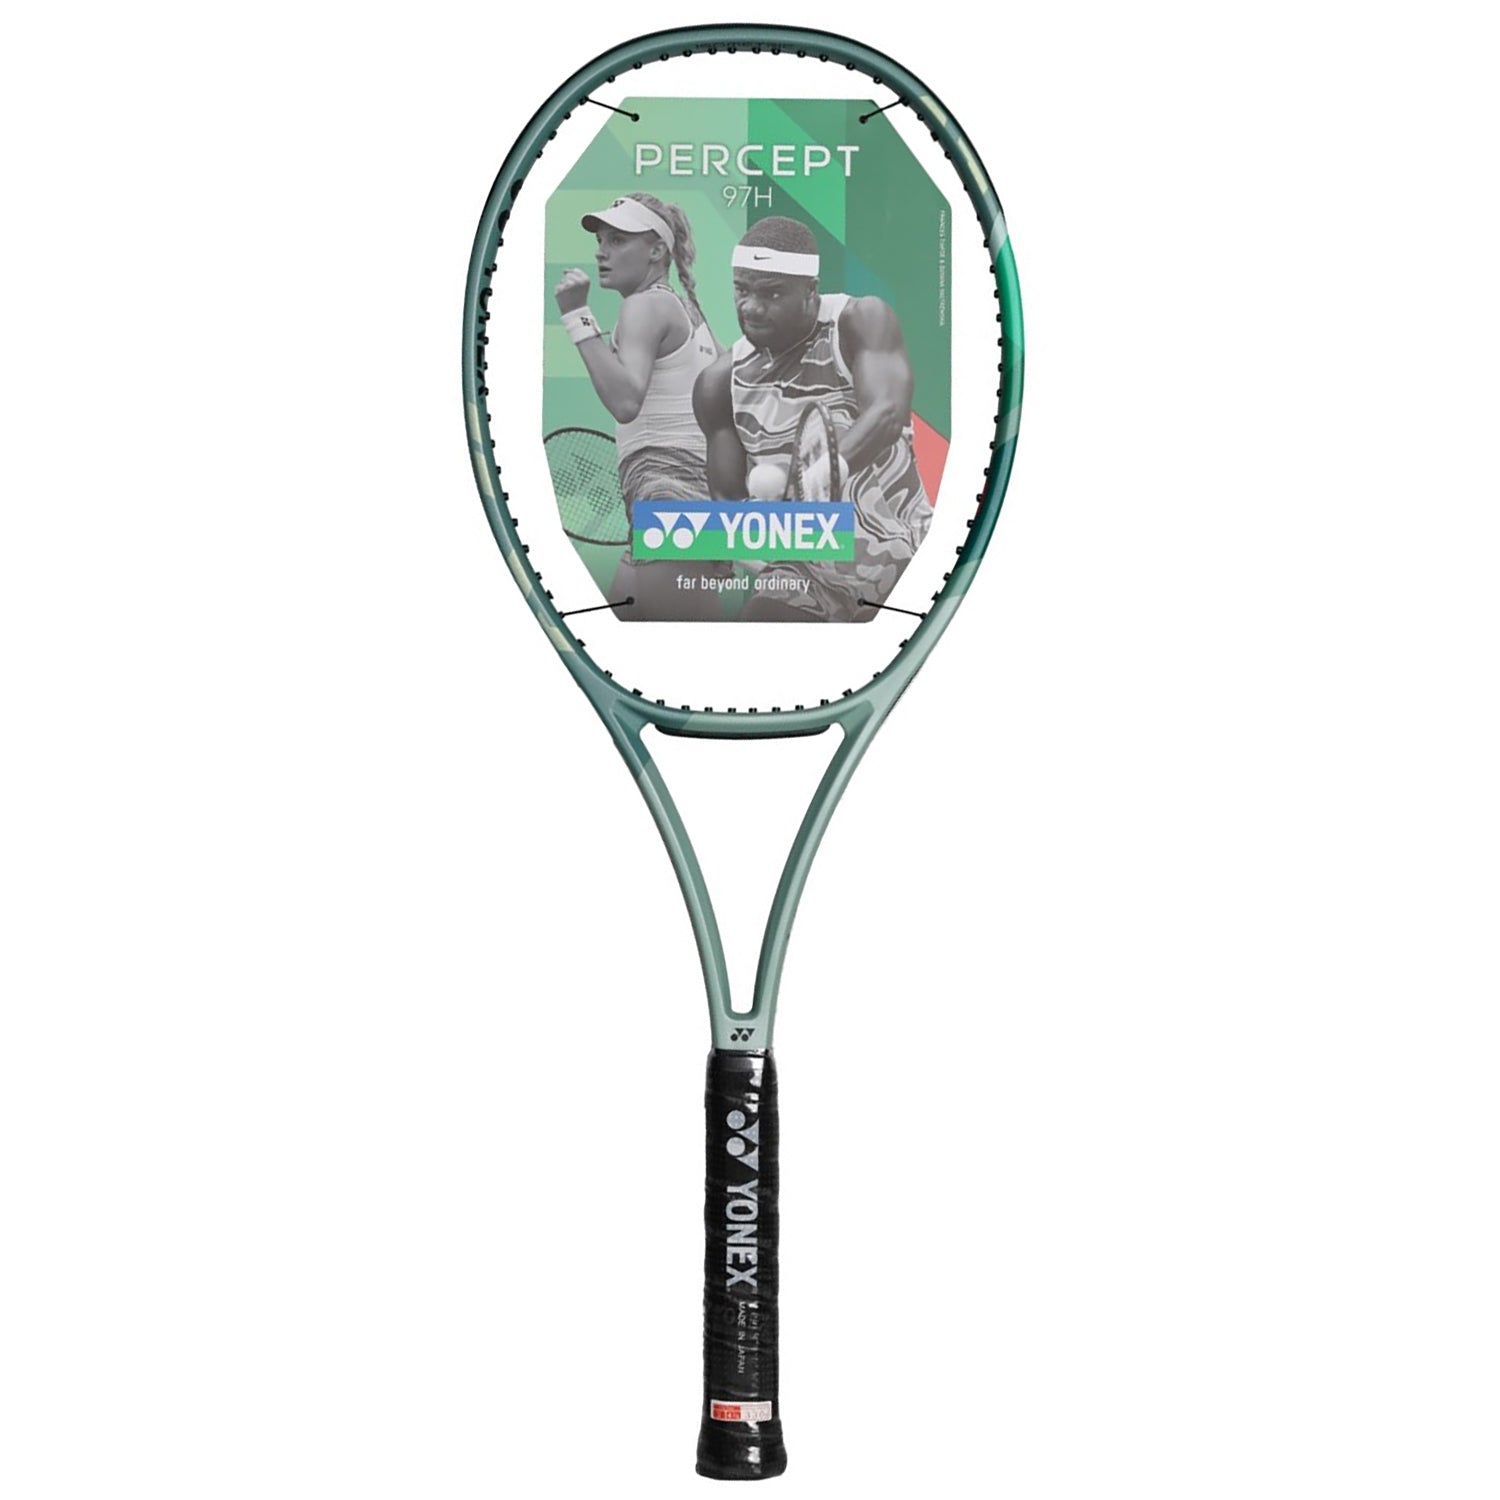 Yonex Percept 97H Unstrung Tennis Racquet, 330Grams - Best Price online Prokicksports.com